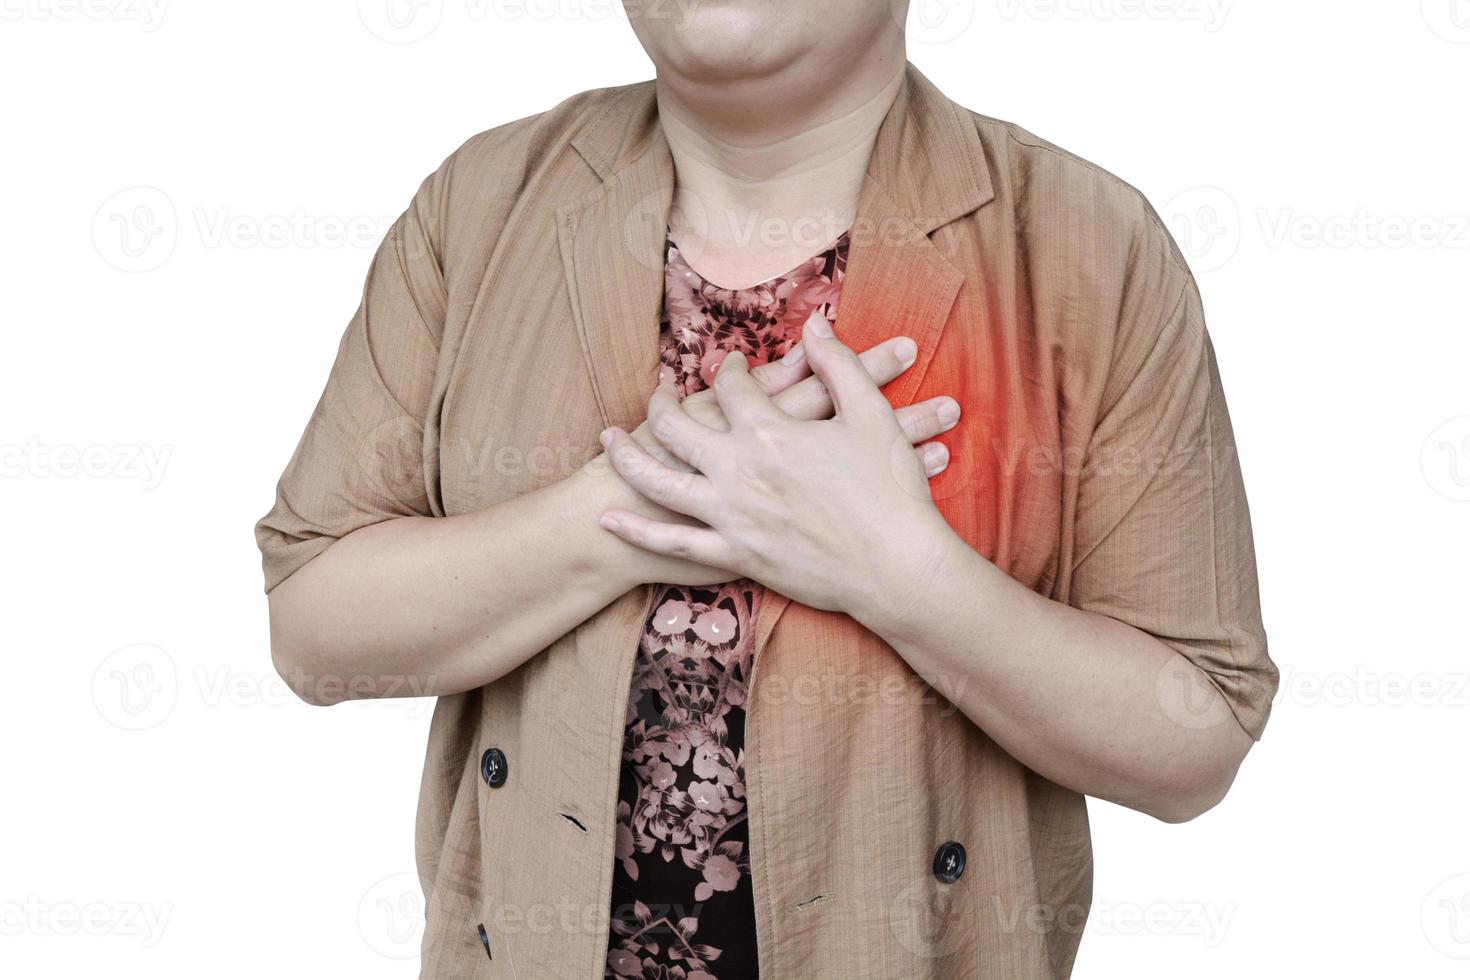 uma mulher segurando a mão no peito está tendo um ataque cardíaco. Isolado em um fundo branco foto